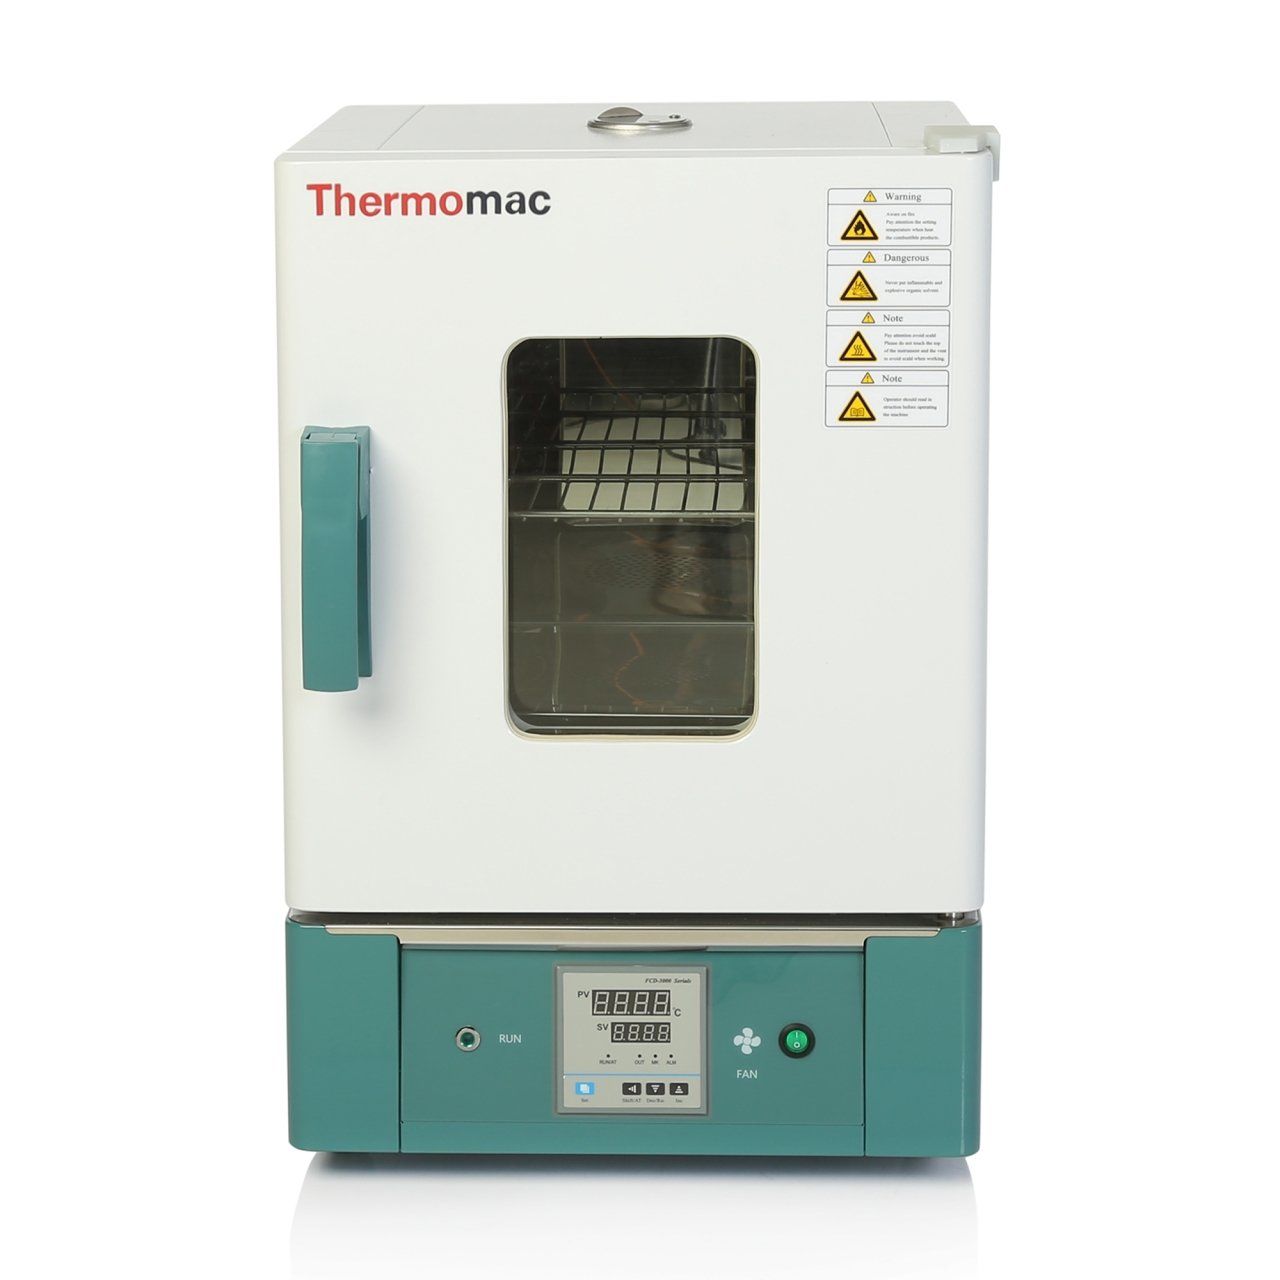 Thermomac FDO65 Laboratuvar Fırını - Fanlı Etüv 65L 300°C